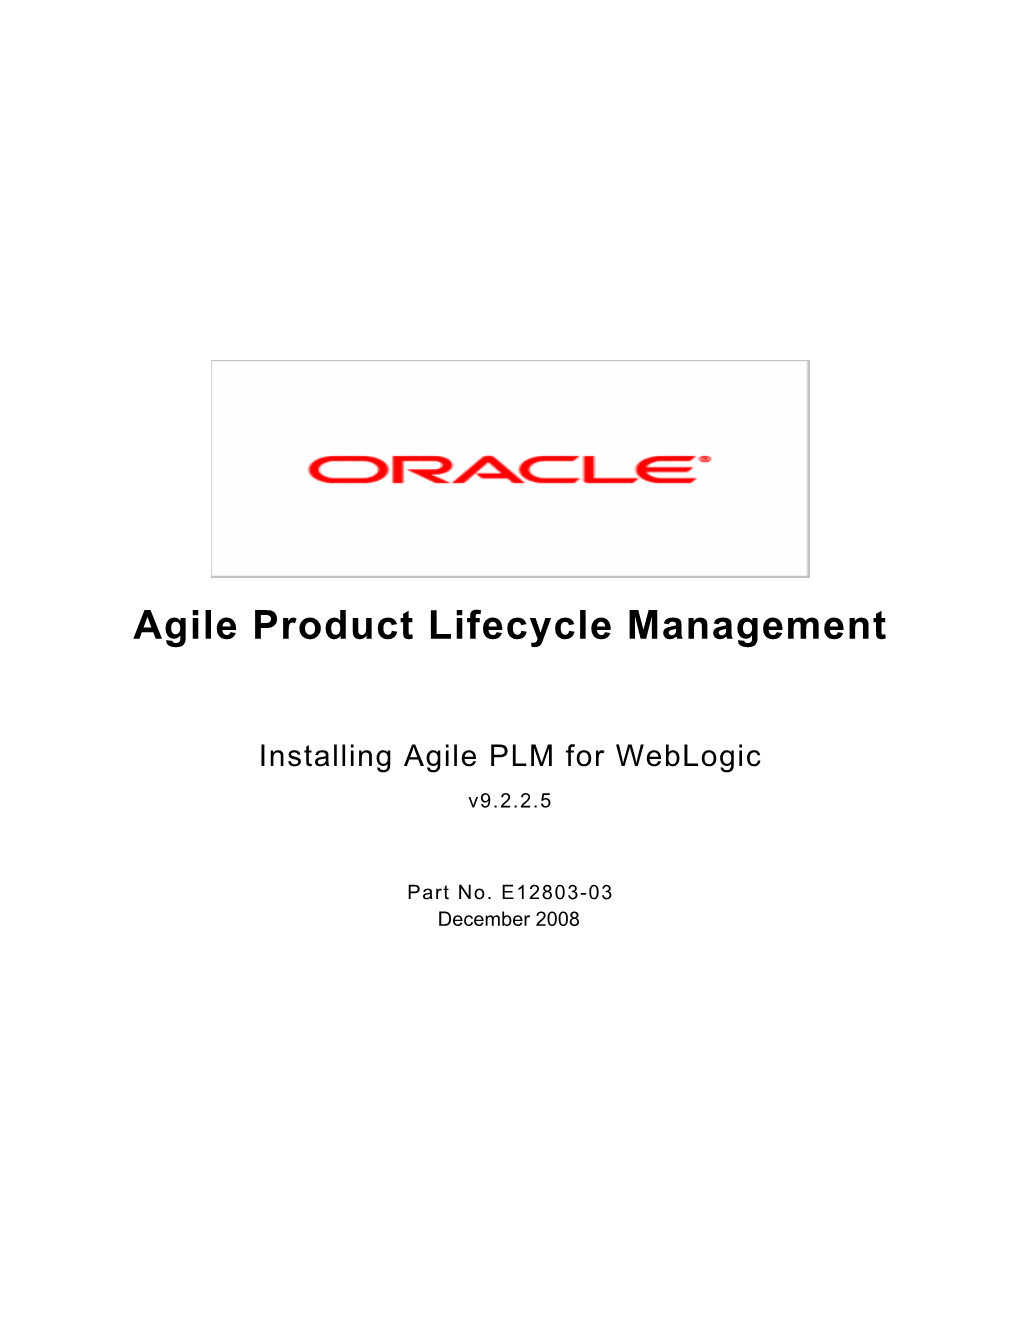 Installing Agile PLM for Weblogic V9.2.2.5